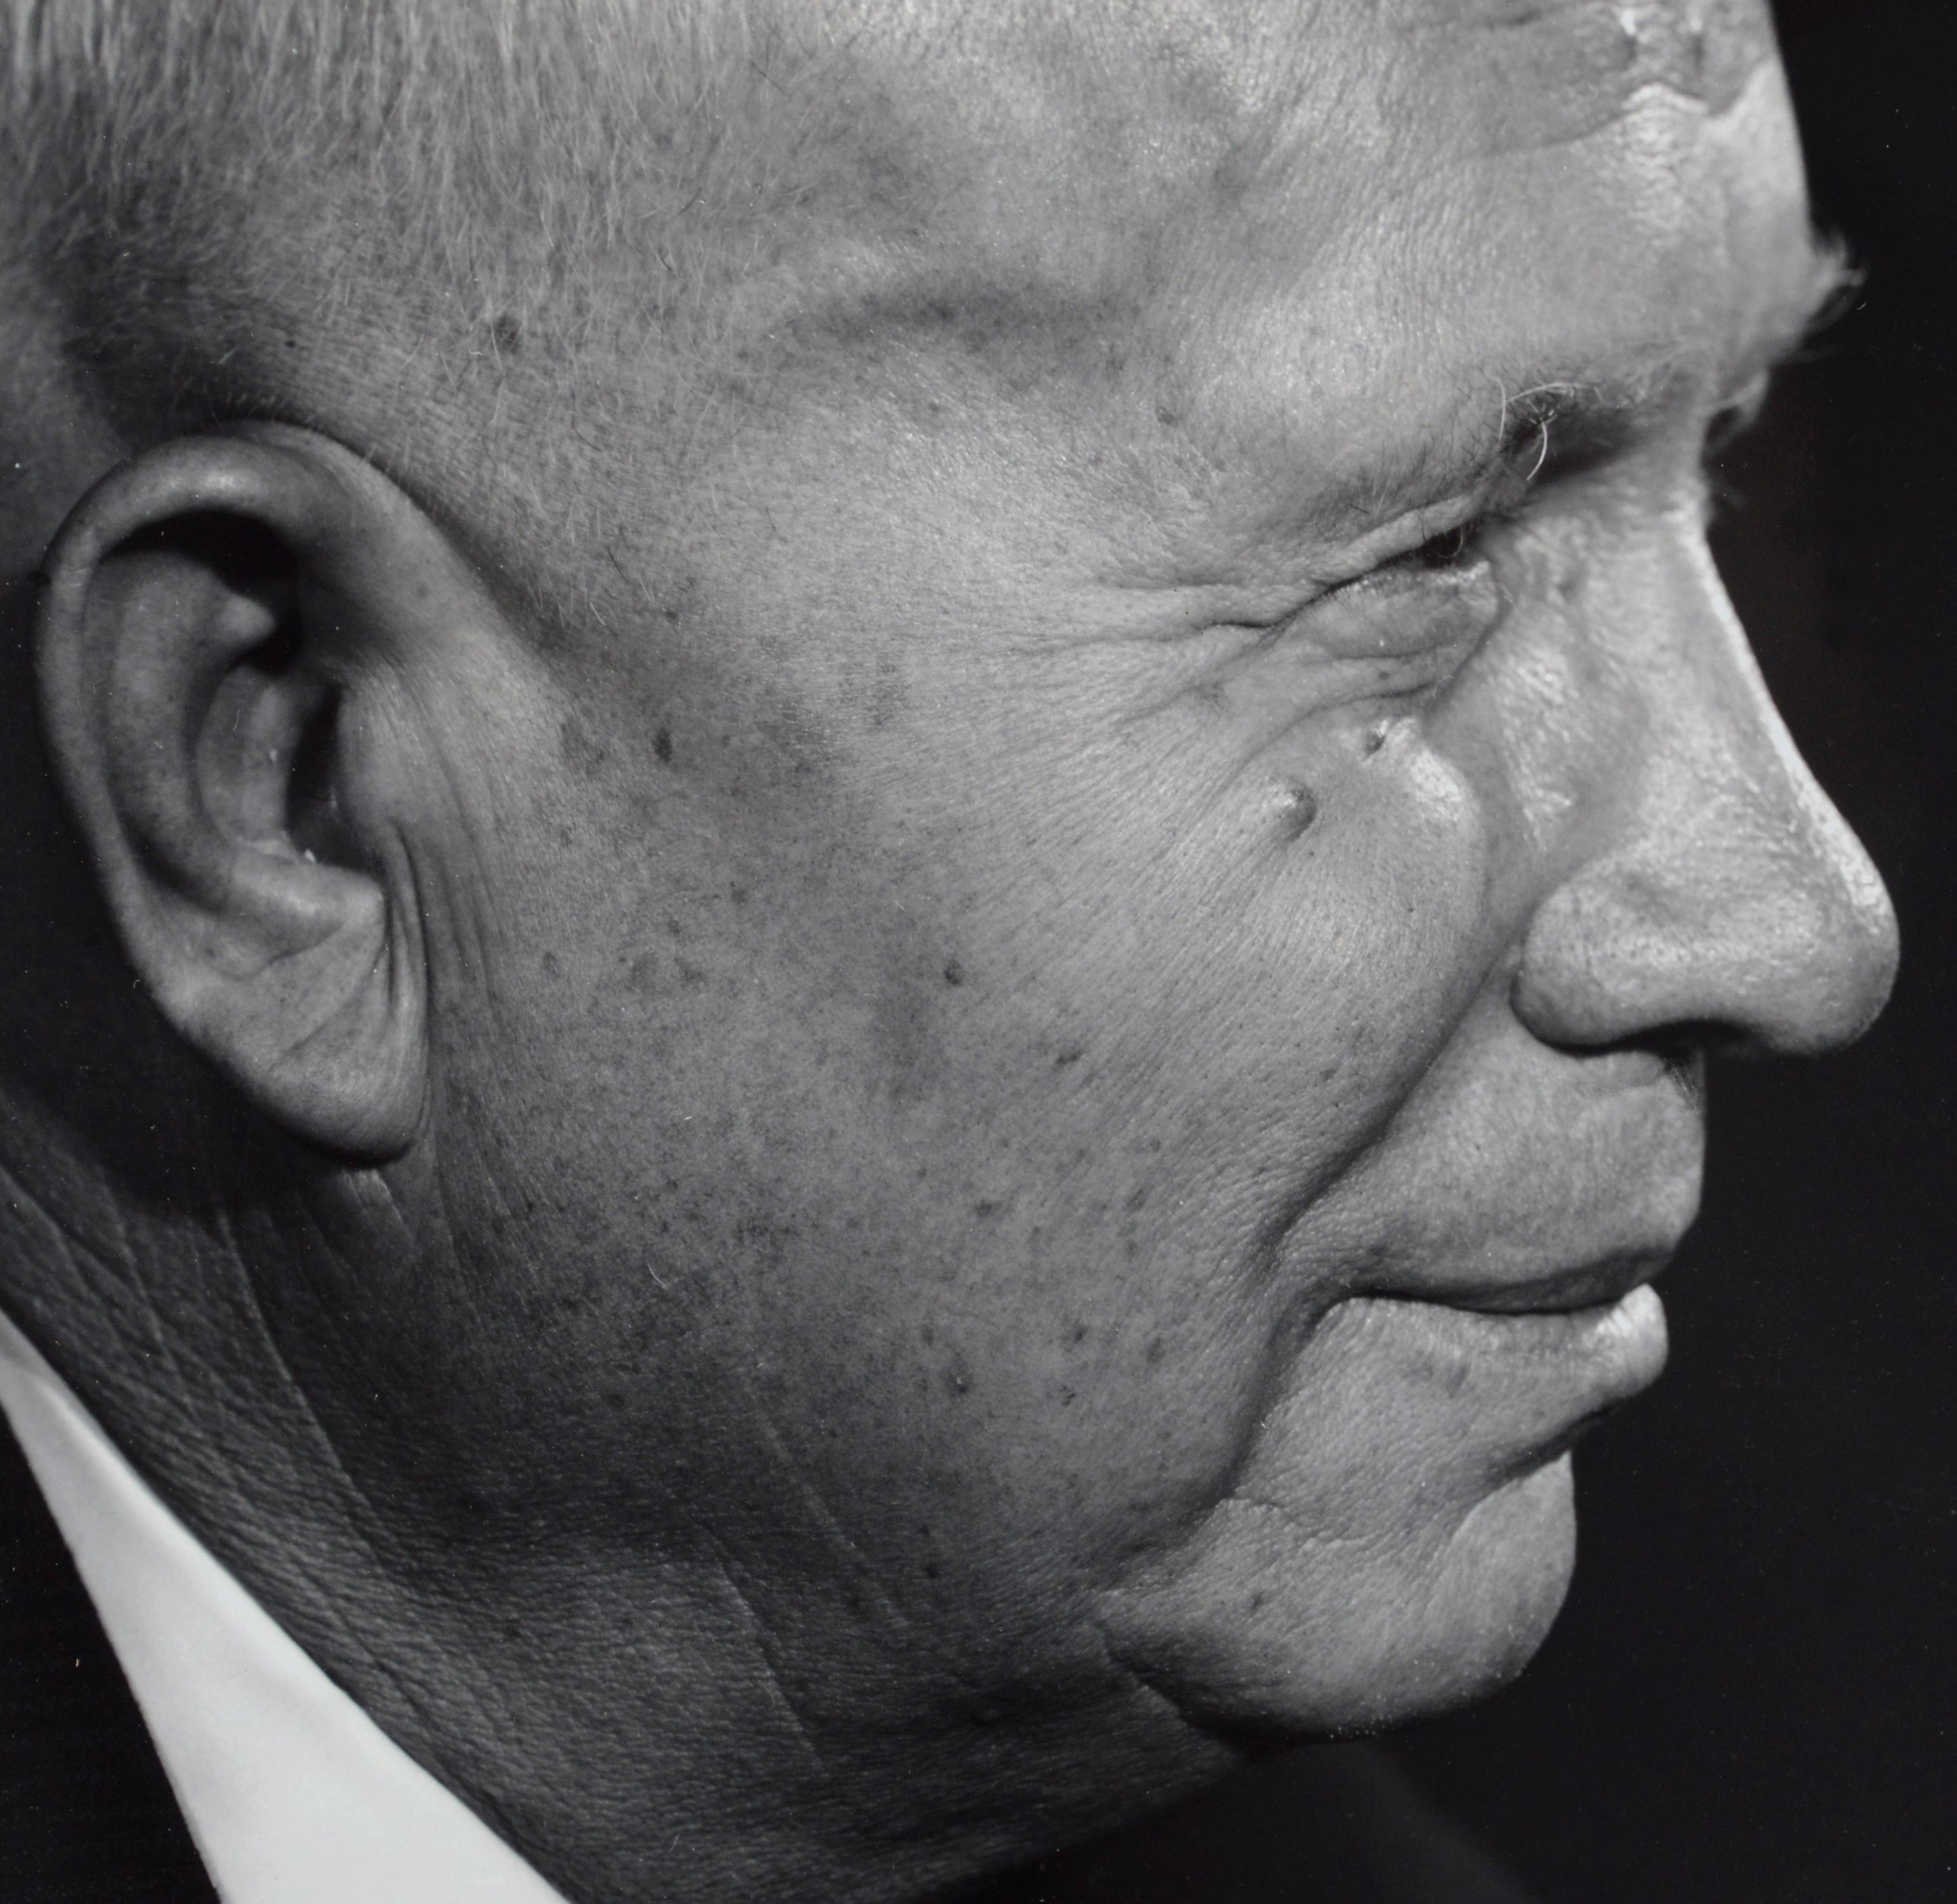 Porträt von Nikita Khrushchev in Profil, Schwarz-Weiß-Fotografie aus der Mitte des Jahrhunderts  – Photograph von Yousuf Karsh